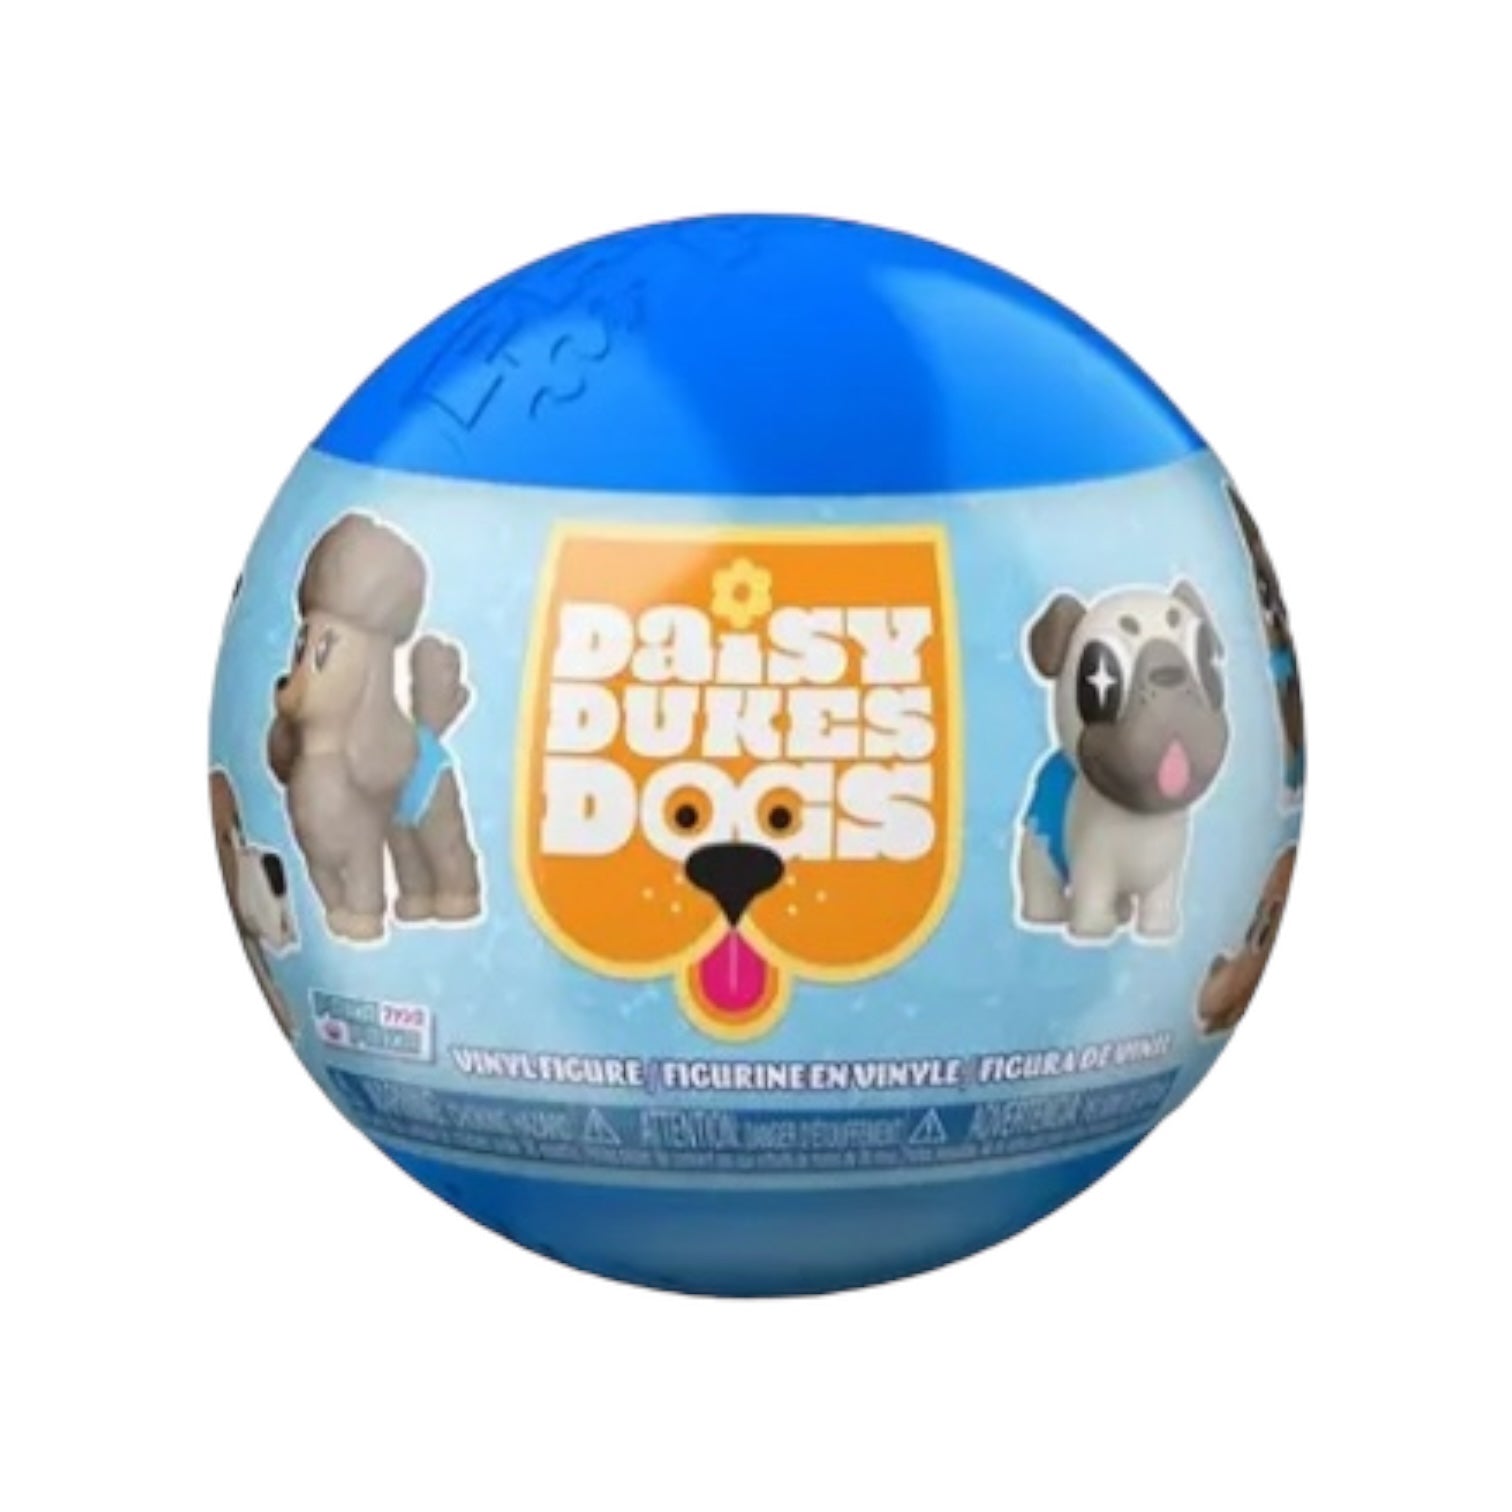 Paka Paka - Daisy Duke Gogs  Funko Blind Capsule Balls